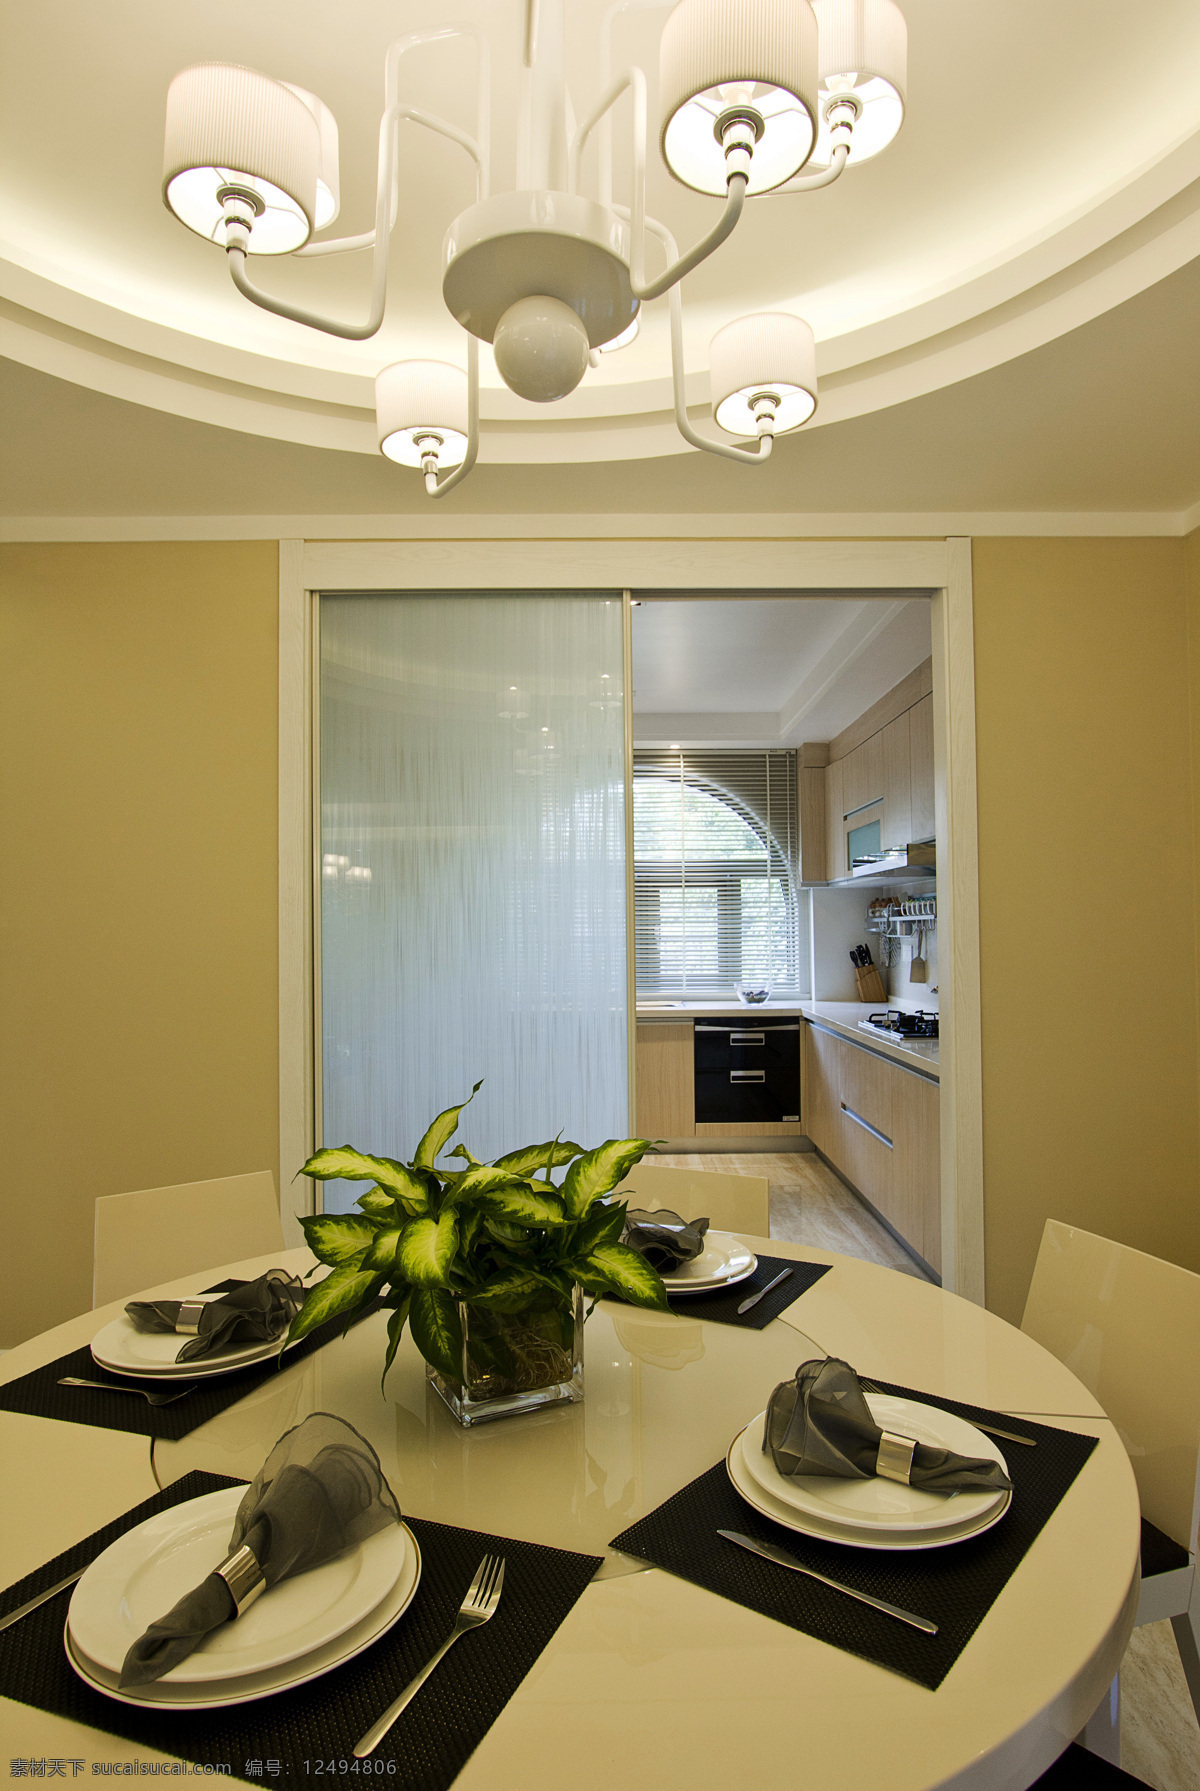 简约 风 室内设计 餐桌 移门 效果图 现代 家装 家居 家具 吊灯